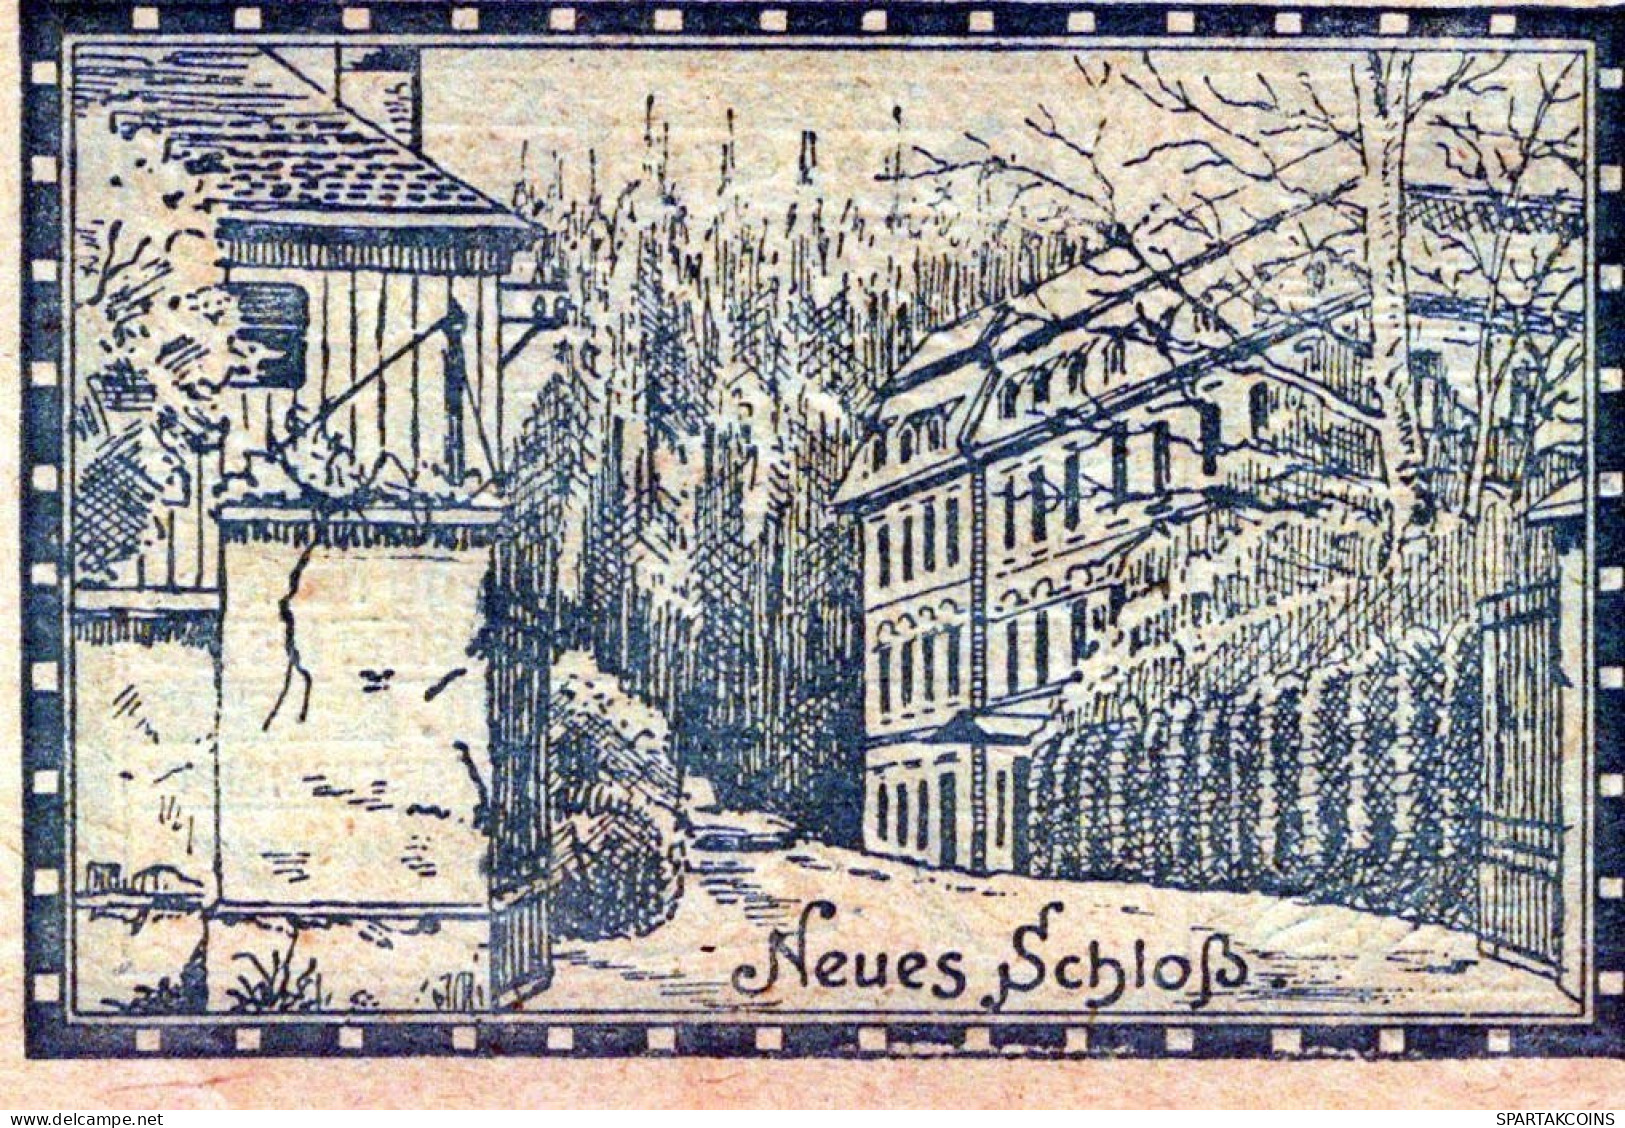 60 HELLER 1920 Stadt STEYREGG Oberösterreich Österreich Notgeld Banknote #PE604 - [11] Emisiones Locales